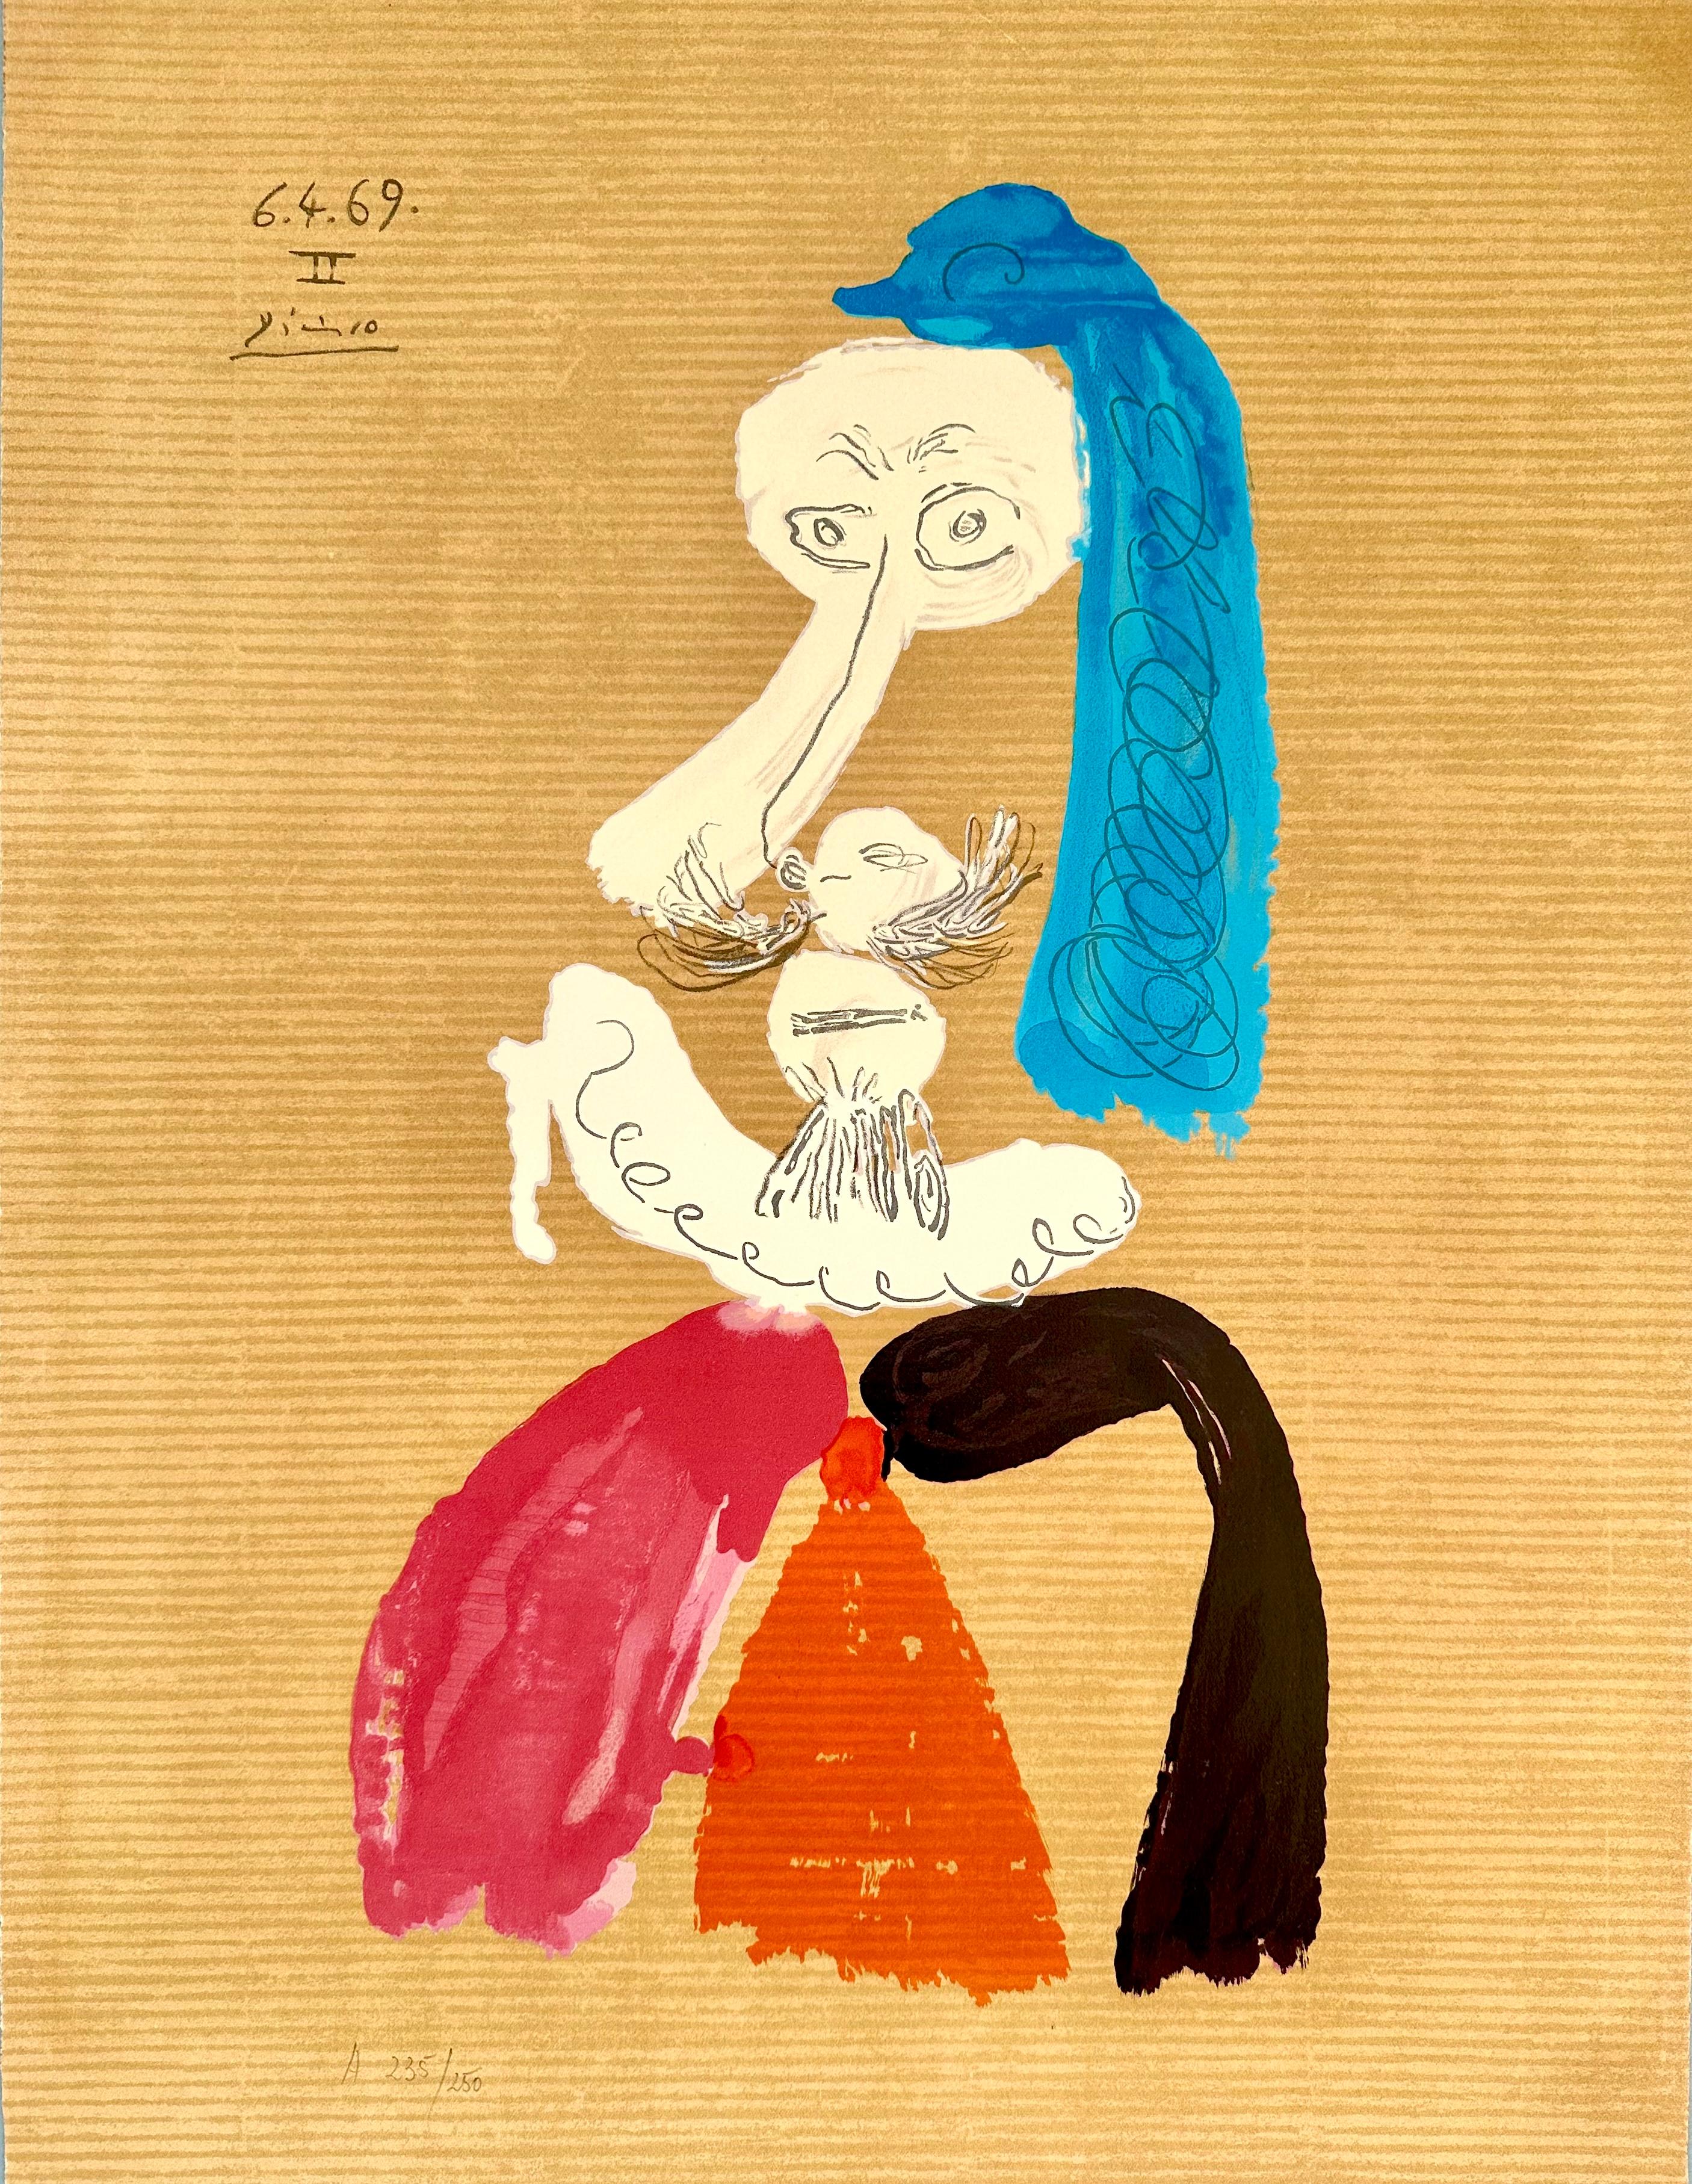 Pablo Picasso Portrait Print - Portraits Imaginaires 6.4.69 II